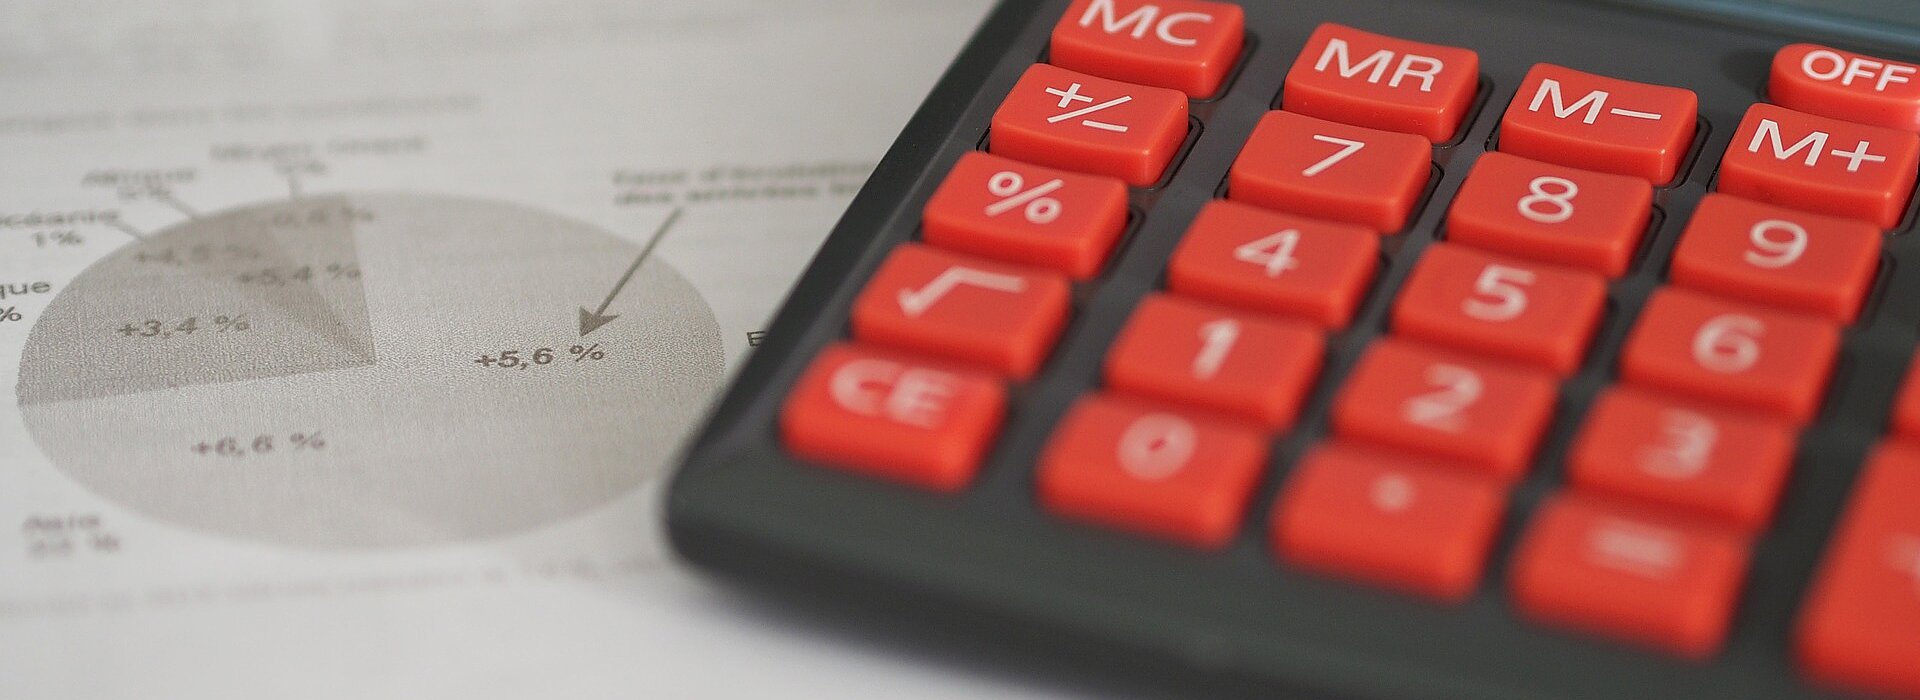 papel com gráficos sobre uma mesa ao lado de uma calculadora de teclas vermelhas.